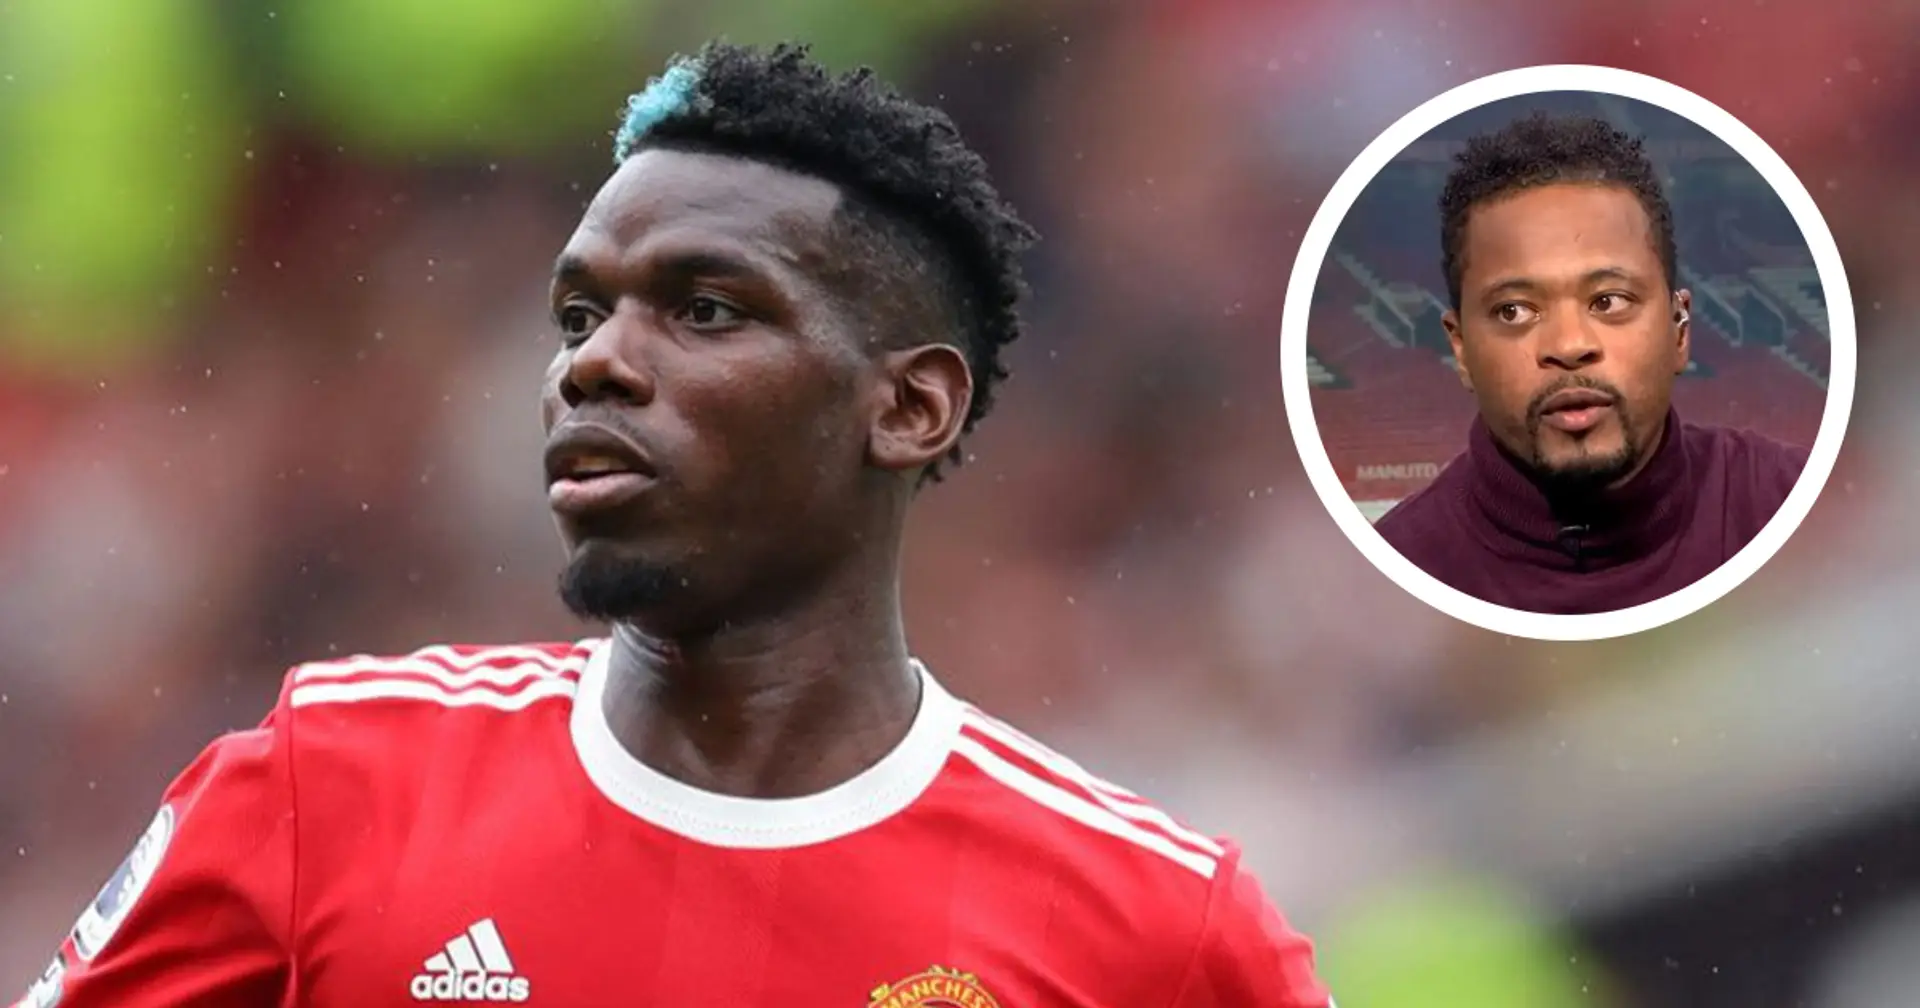 "Il ne se sent pas aimé en Angleterre": Patrice Evra explique pourquoi Pogba pourrait décider de quitter United cet été